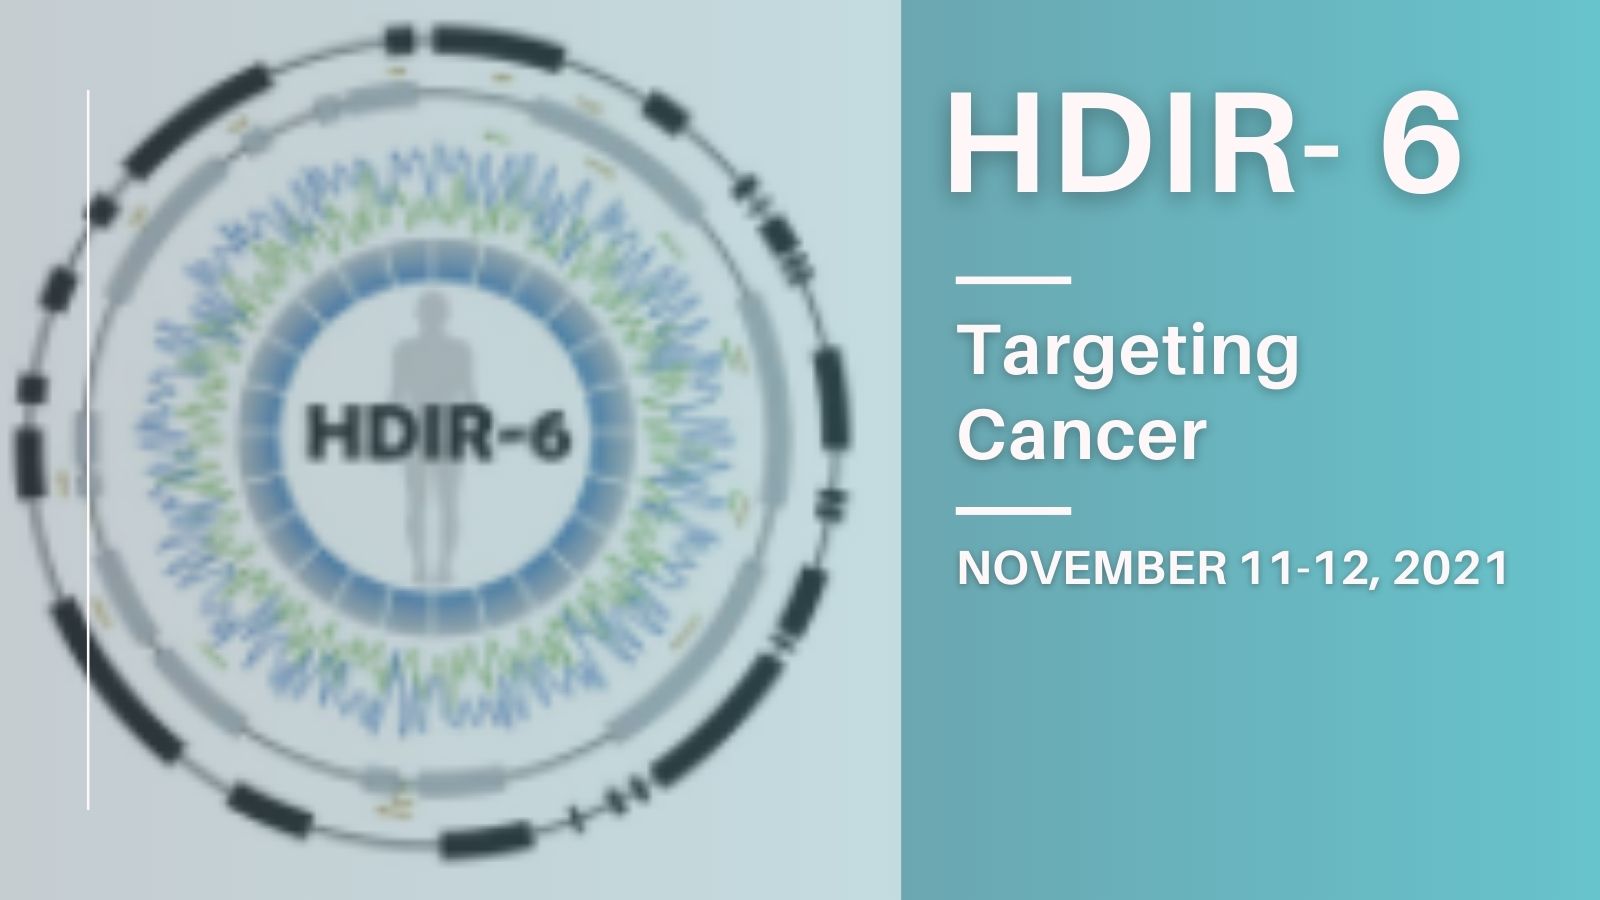 HDIR-6: Targeting Cancer